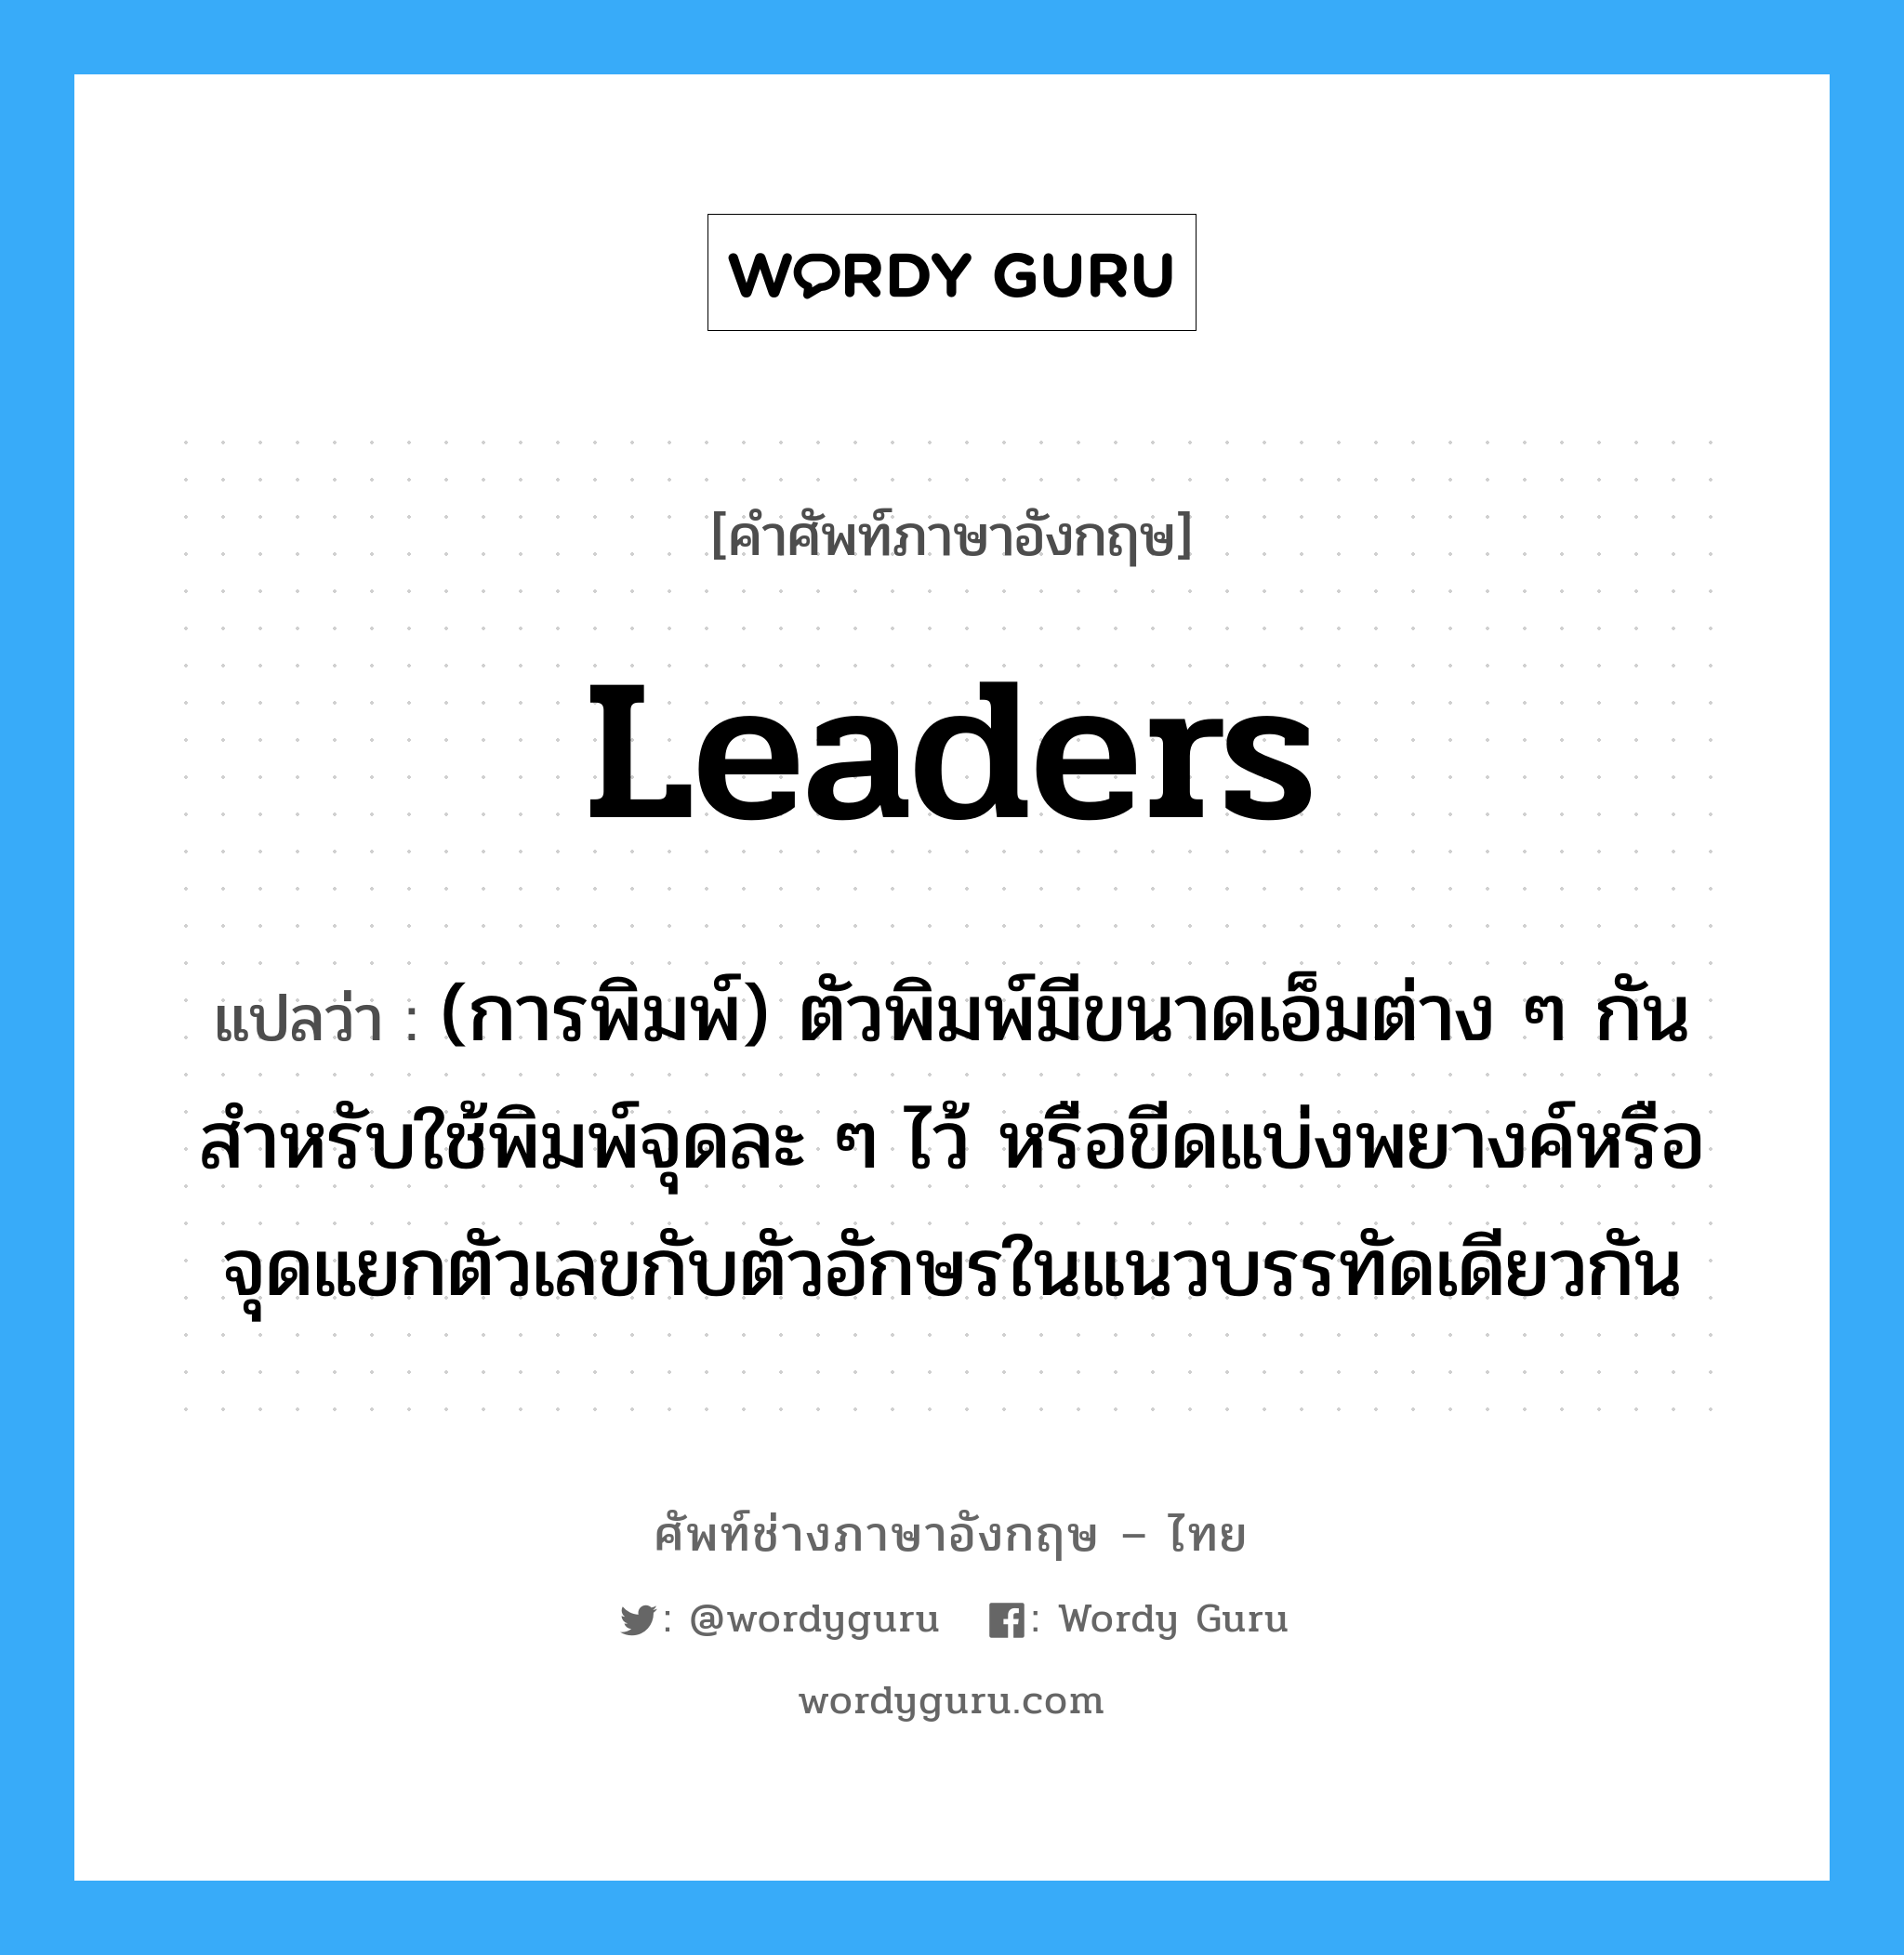 leaders แปลว่า?, คำศัพท์ช่างภาษาอังกฤษ - ไทย leaders คำศัพท์ภาษาอังกฤษ leaders แปลว่า (การพิมพ์) ตัวพิมพ์มีขนาดเอ็มต่าง ๆ กันสำหรับใช้พิมพ์จุดละ ๆ ไว้ หรือขีดแบ่งพยางค์หรือจุดแยกตัวเลขกับตัวอักษรในแนวบรรทัดเดียวกัน